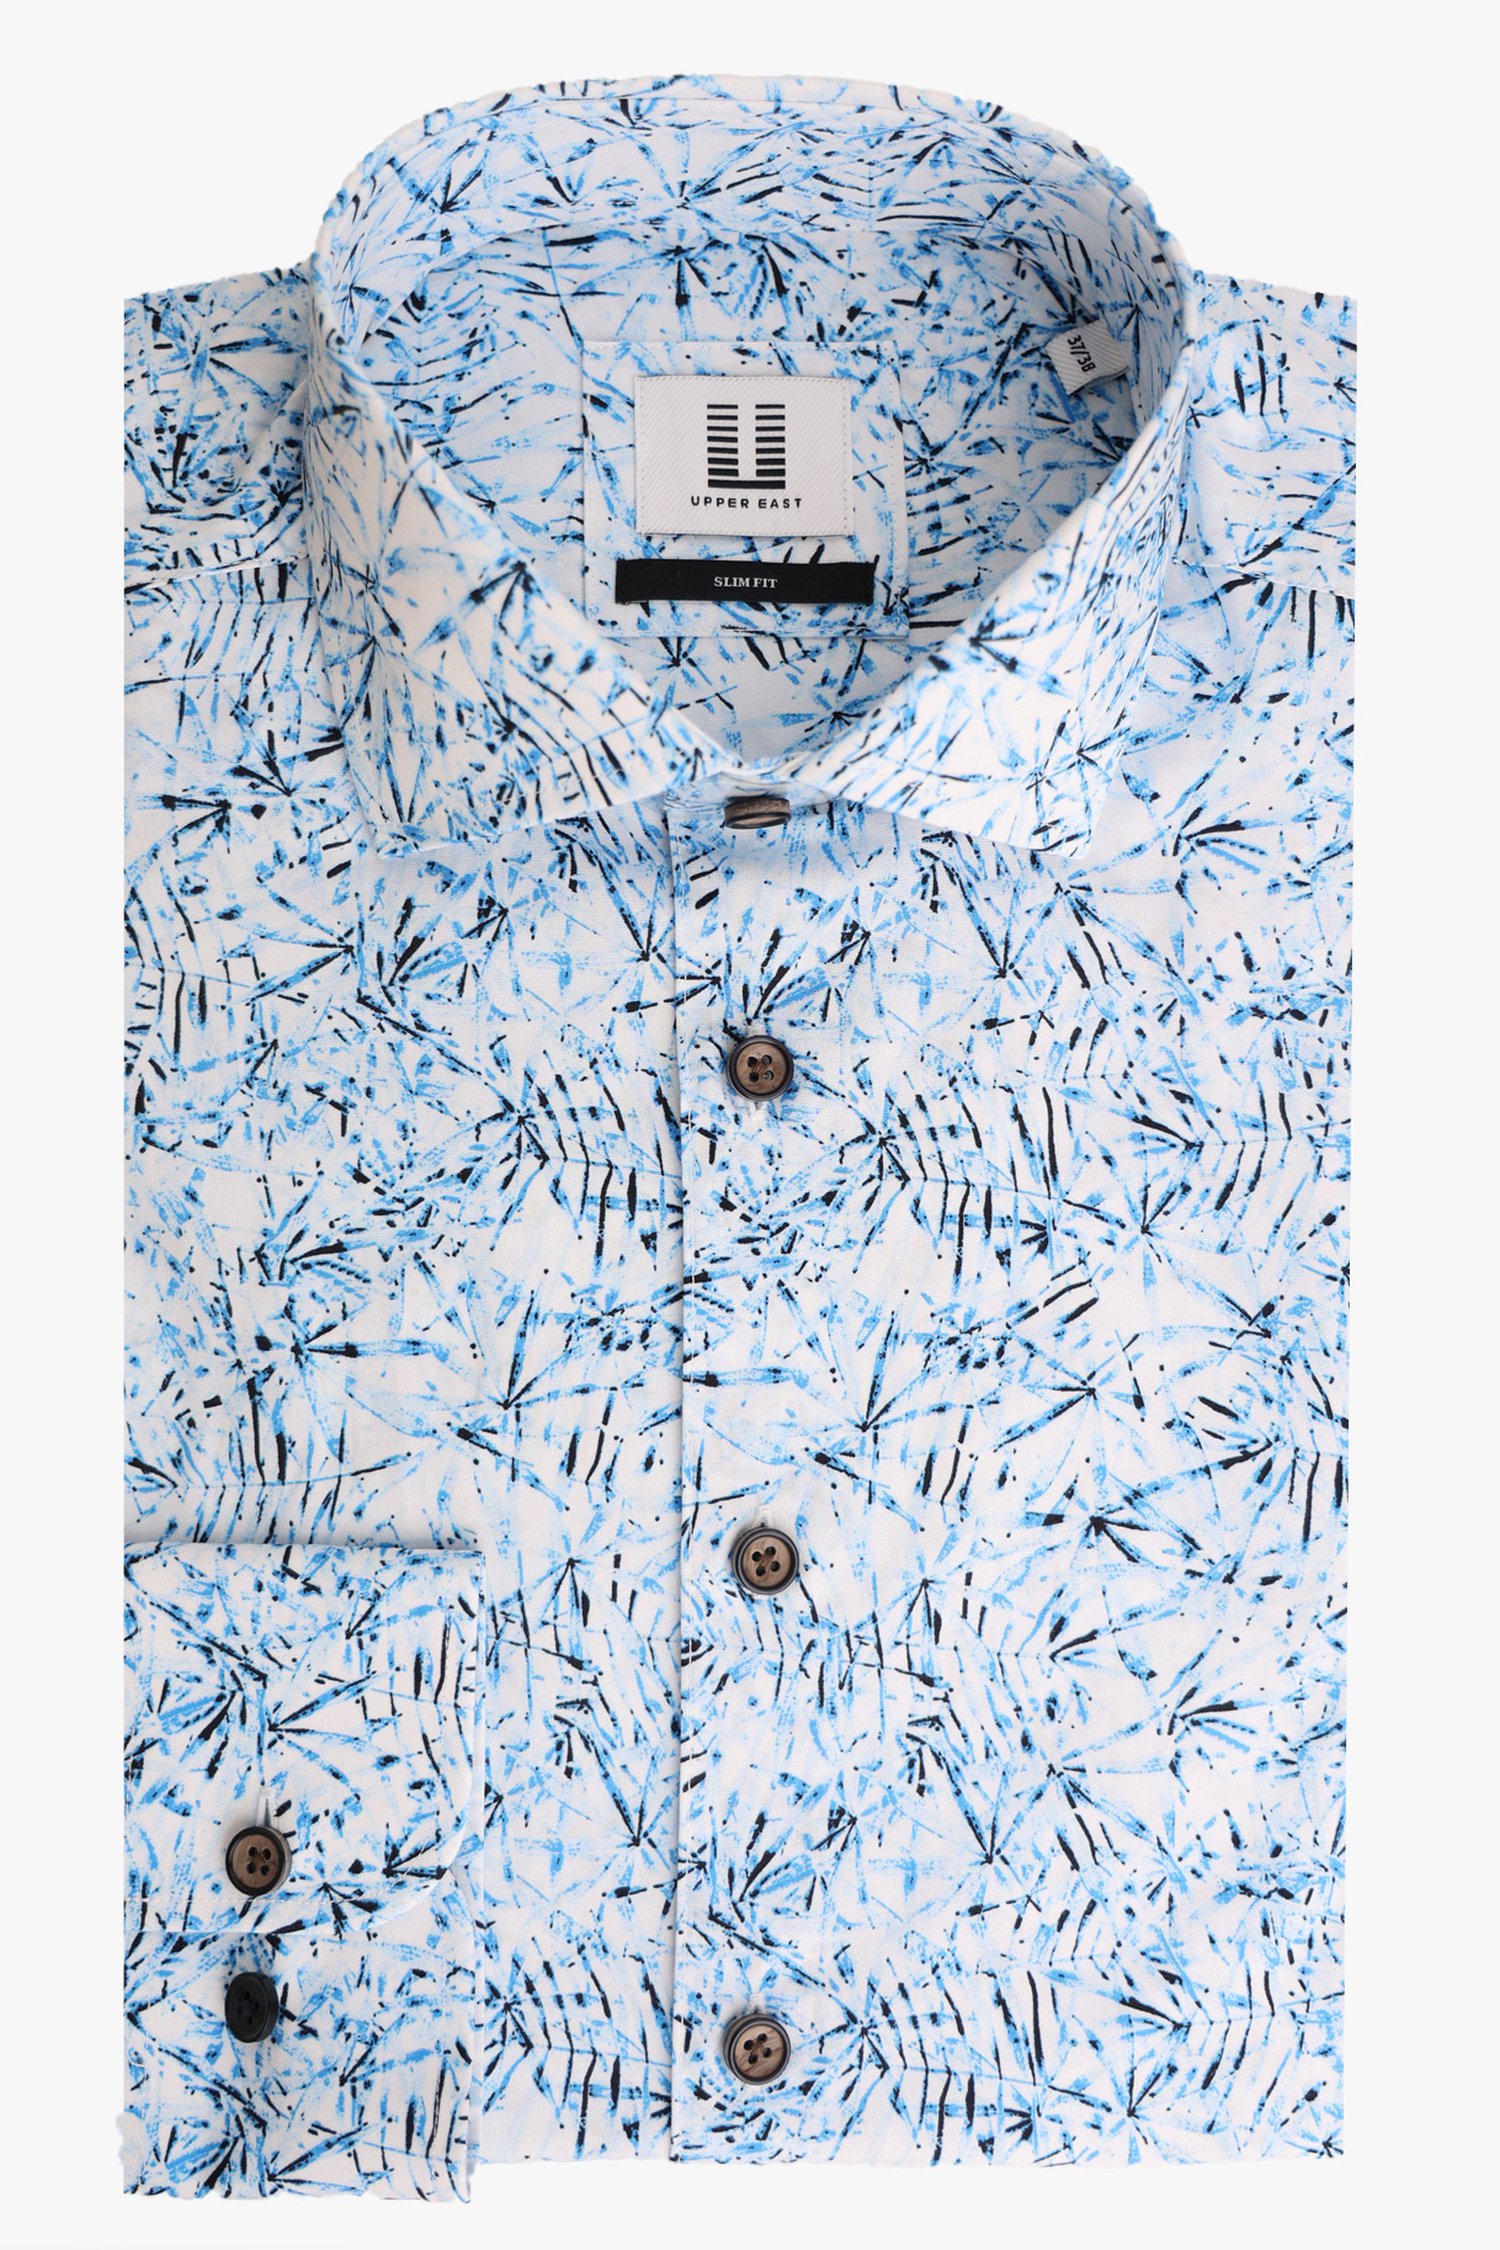 Wit hemd met blauwe print - slim fit van Upper East voor Heren